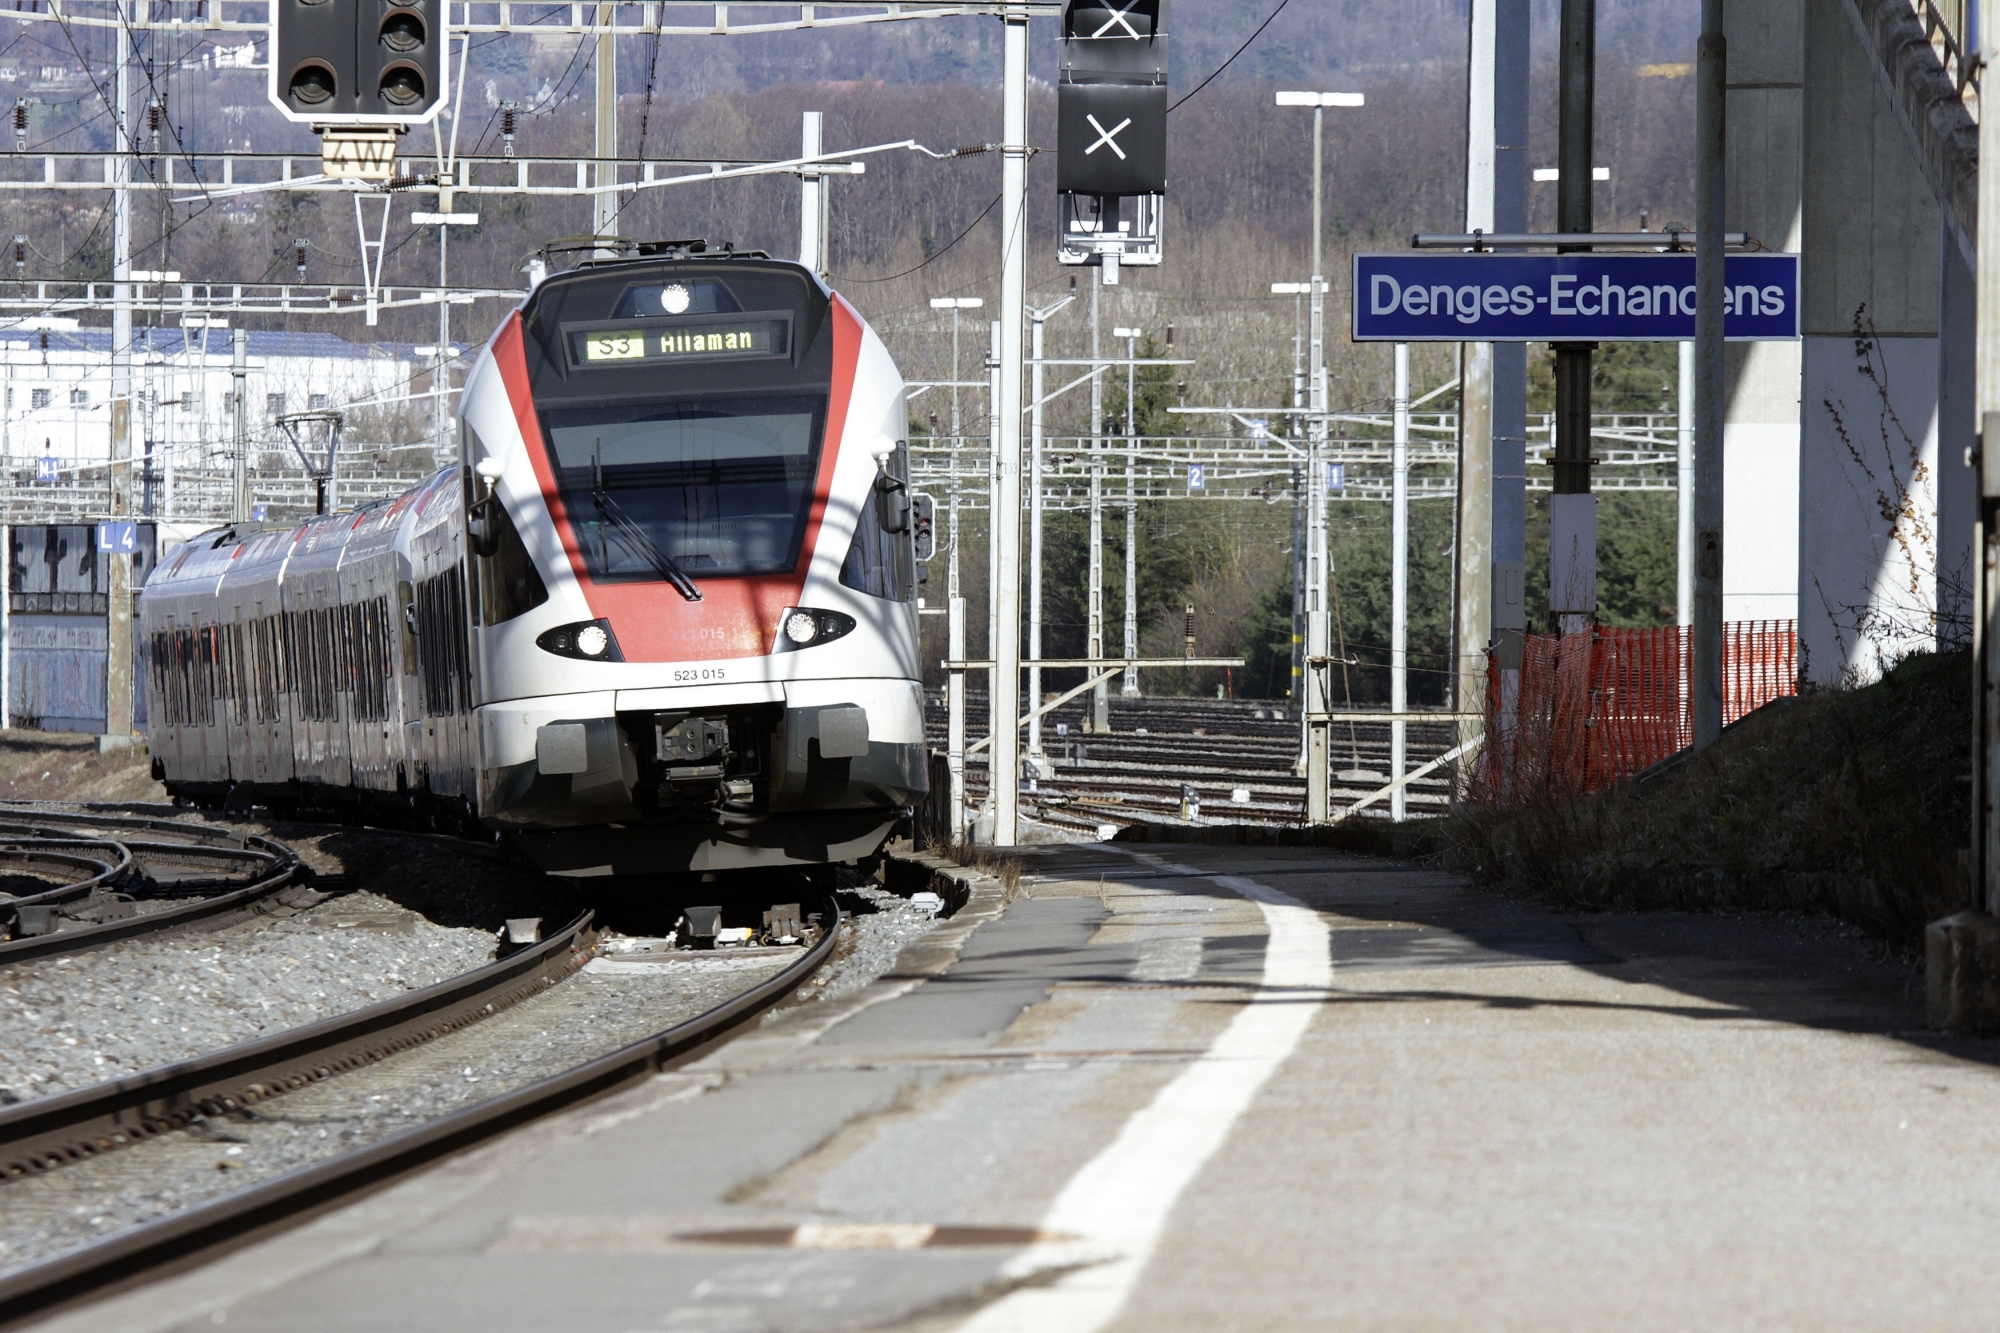 Le Grand Conseil a également dit oui à une détermination demandant d'étudier l'option d'une ligne souterraine Morges-Lausanne avec une gare à l'EPFL.